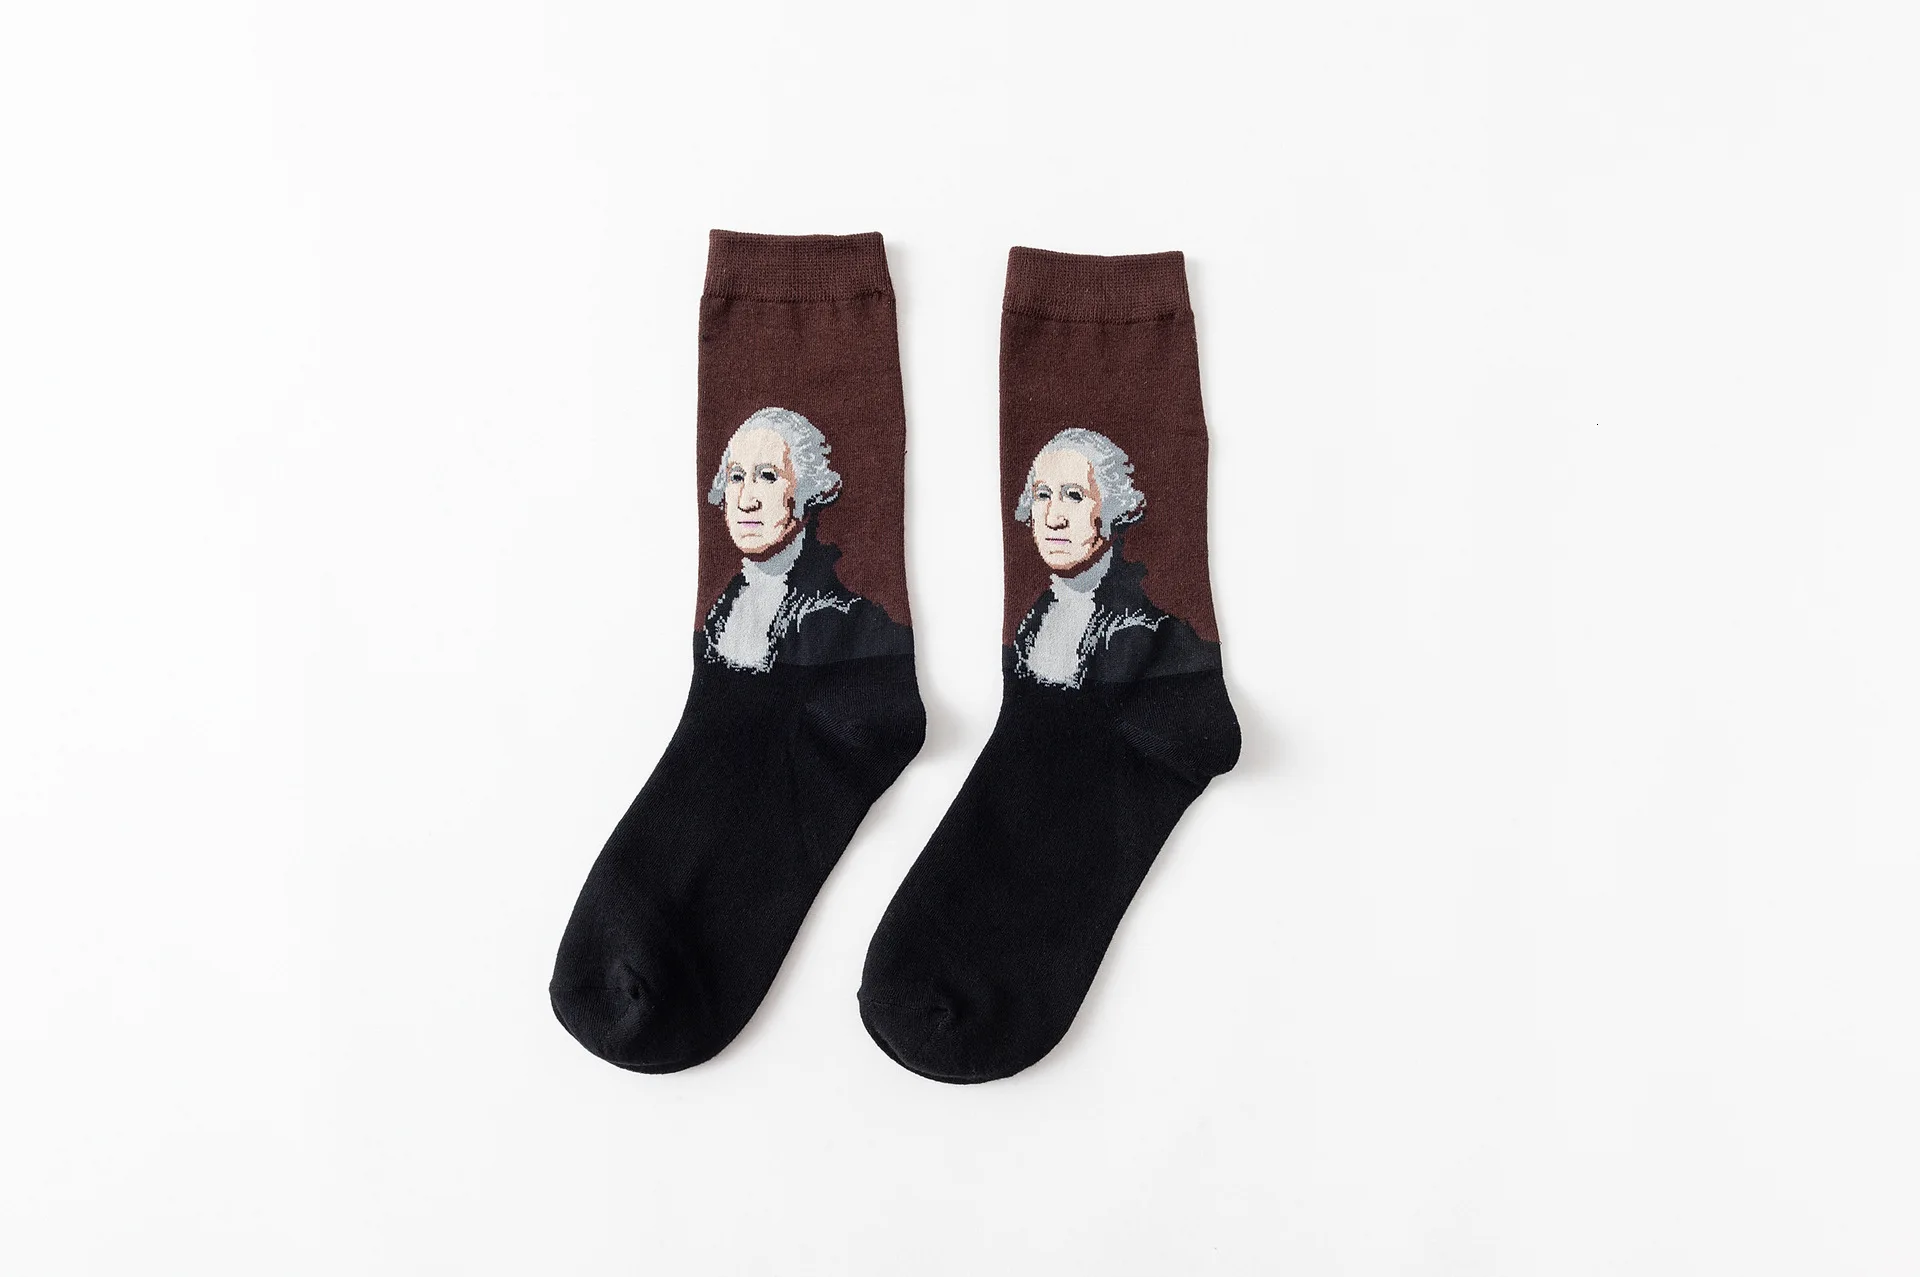 MUXNSARYU/1 пара носков; Мужские Носки с рисунком Моны Лизы; хлопковые носки для мужчин с рисунком Ван Гога, масляной живописи, звездного неба